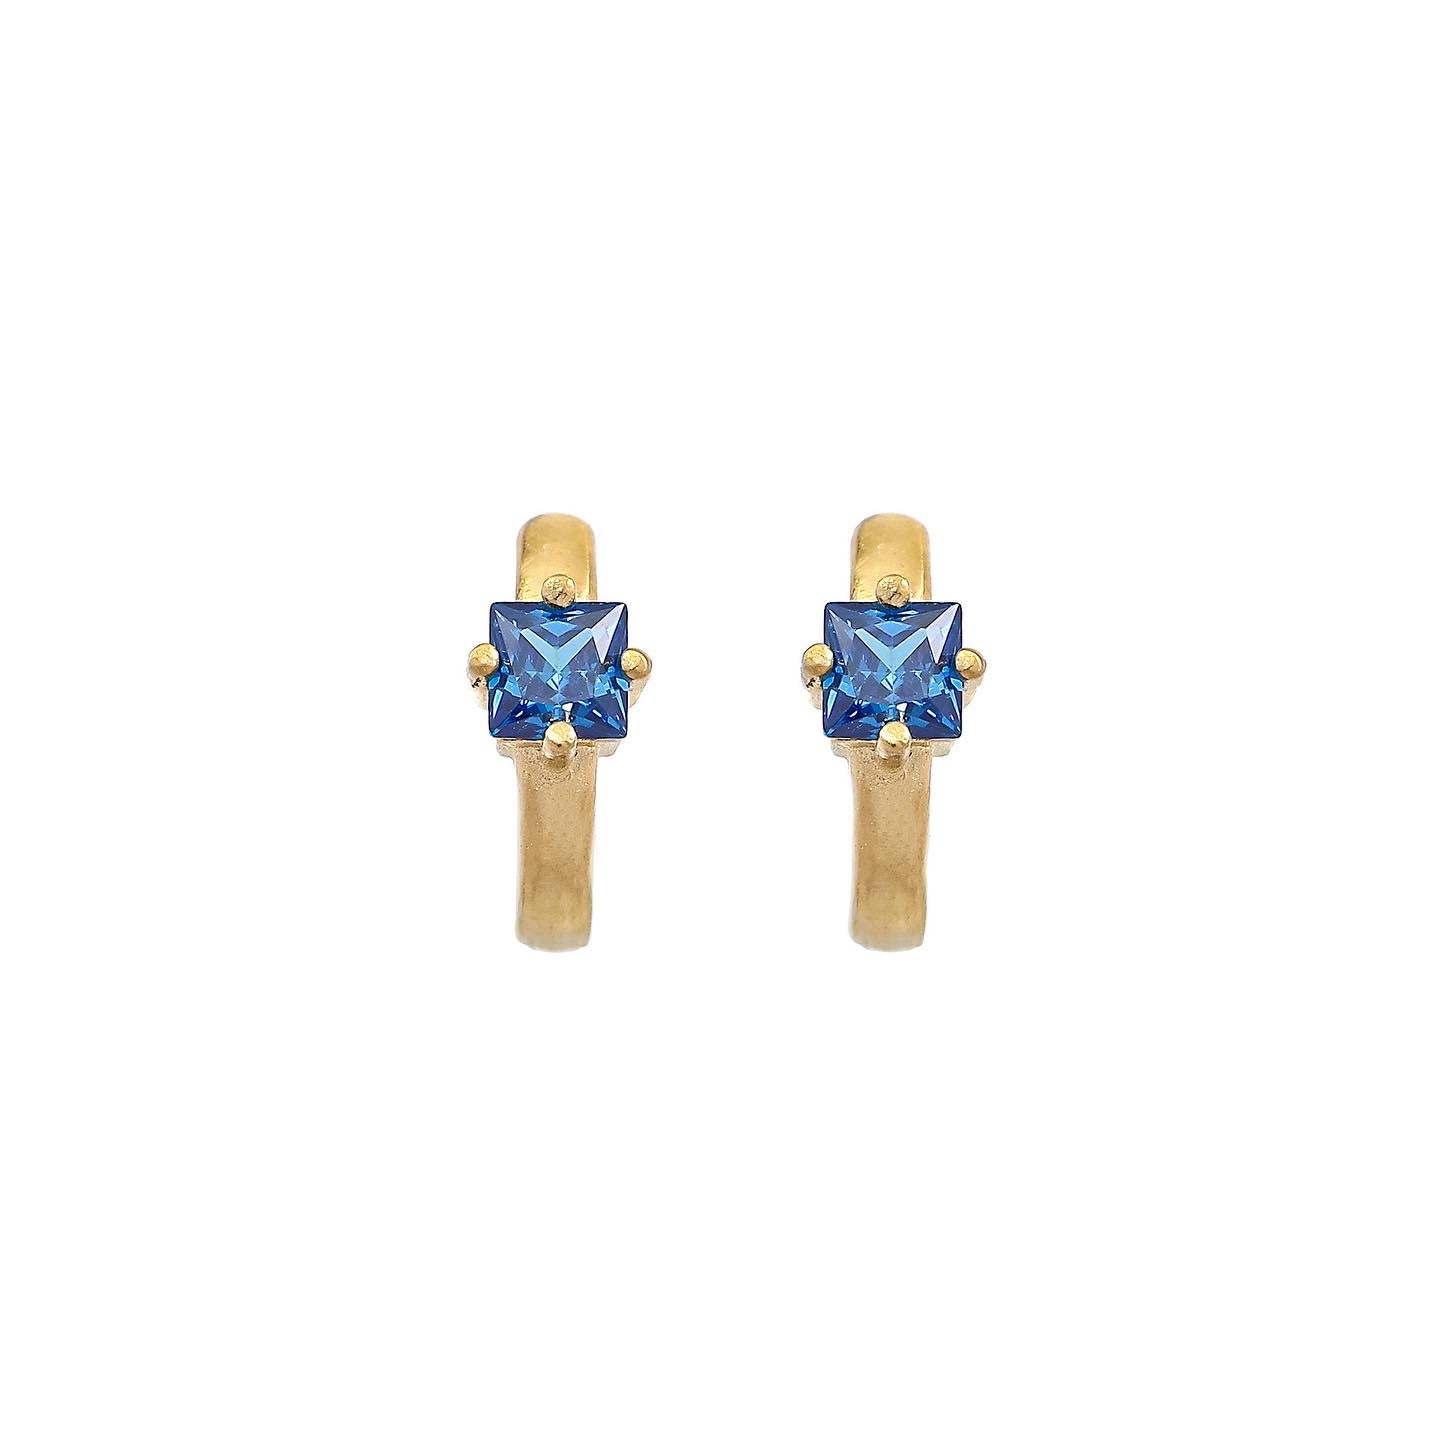 Emma Stud earrings - Midnight blue